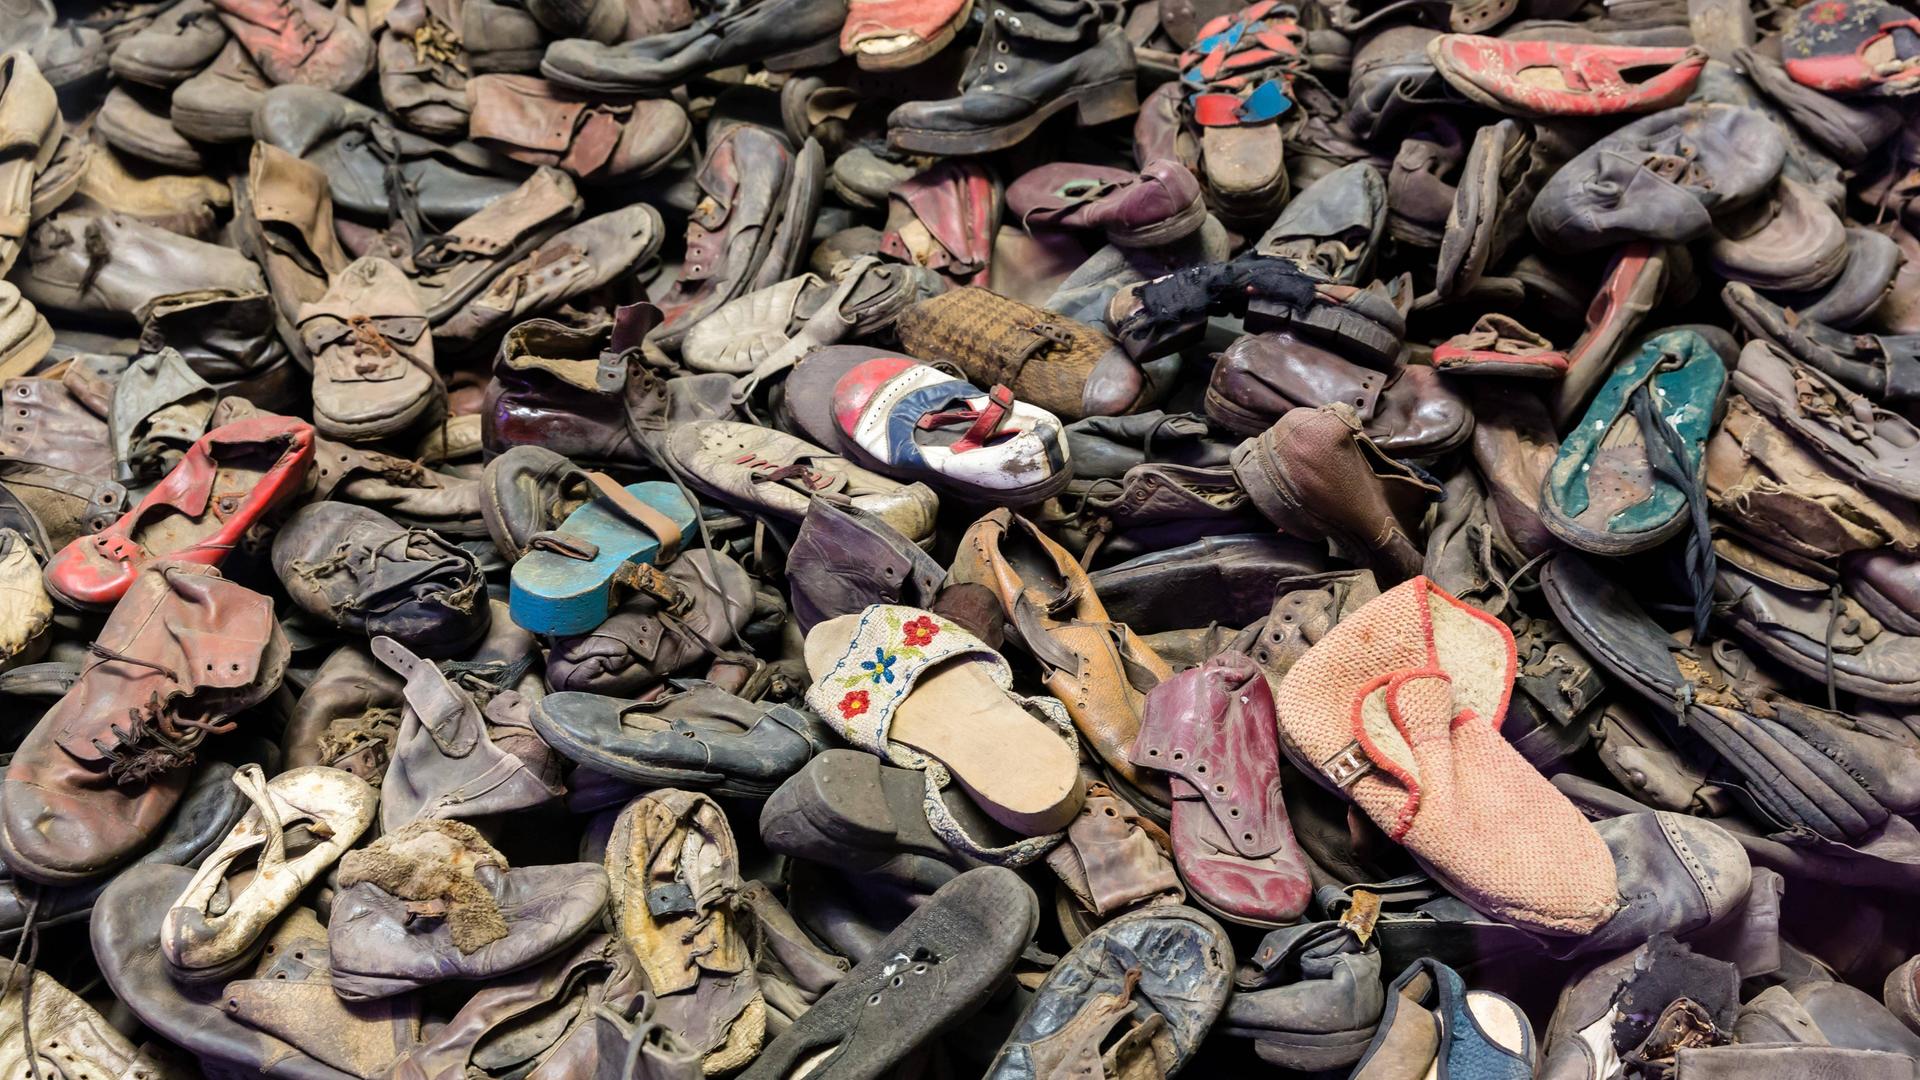 Schuhe von Opfern des Holocaust im ehemaligen Konzentrationslager Auschwitz. Sie liegen durcheinander auf einem Haufen.